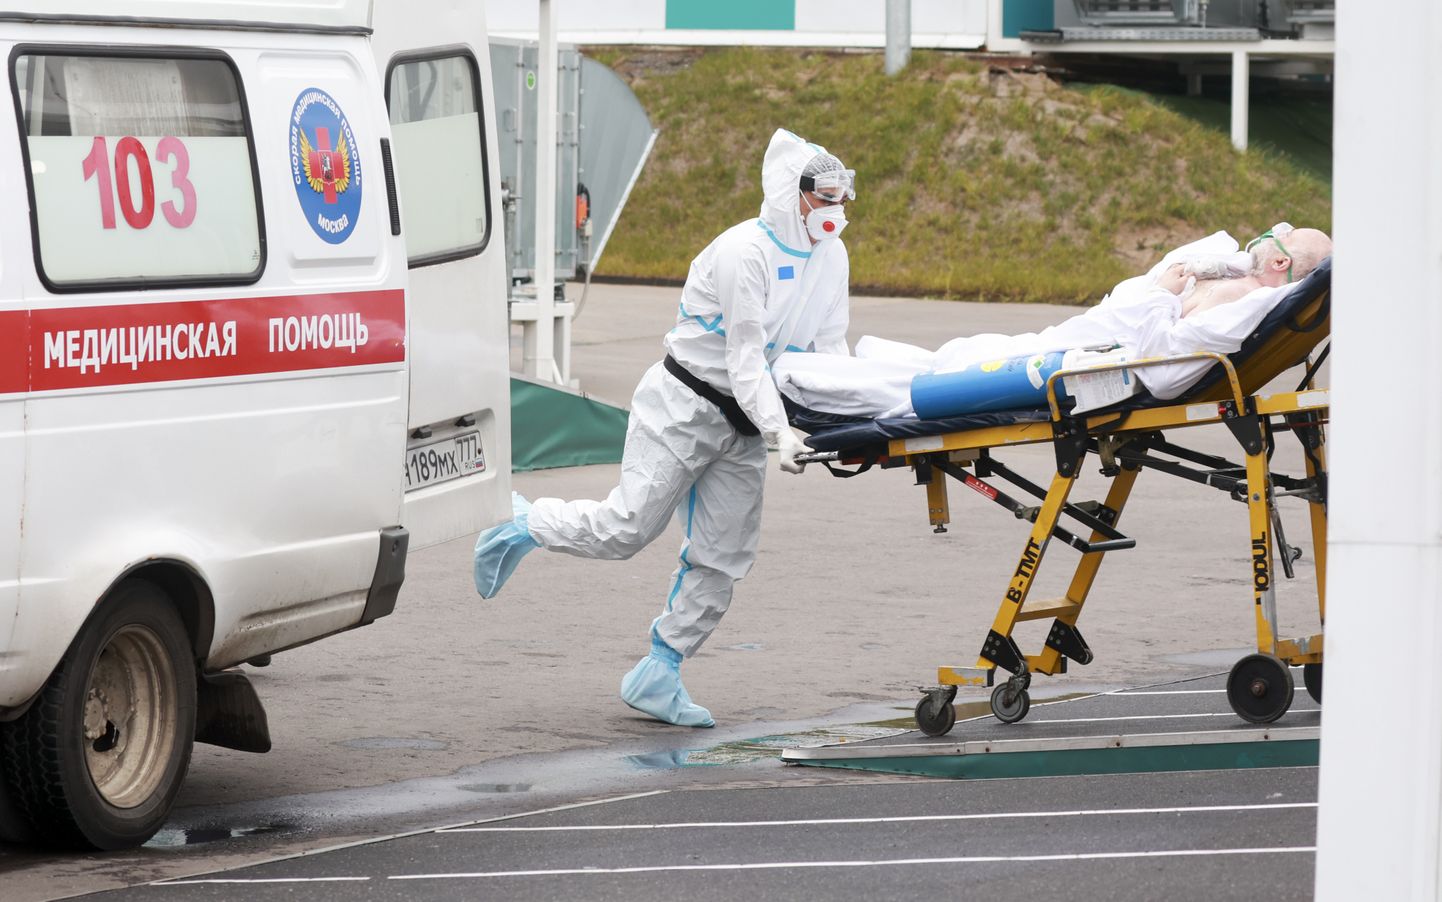 Venemaa, Moskva, 17. oktoober 2021. Kiirabitöötaja transpordib haiget. Pilt loo juures on illustratiivne.